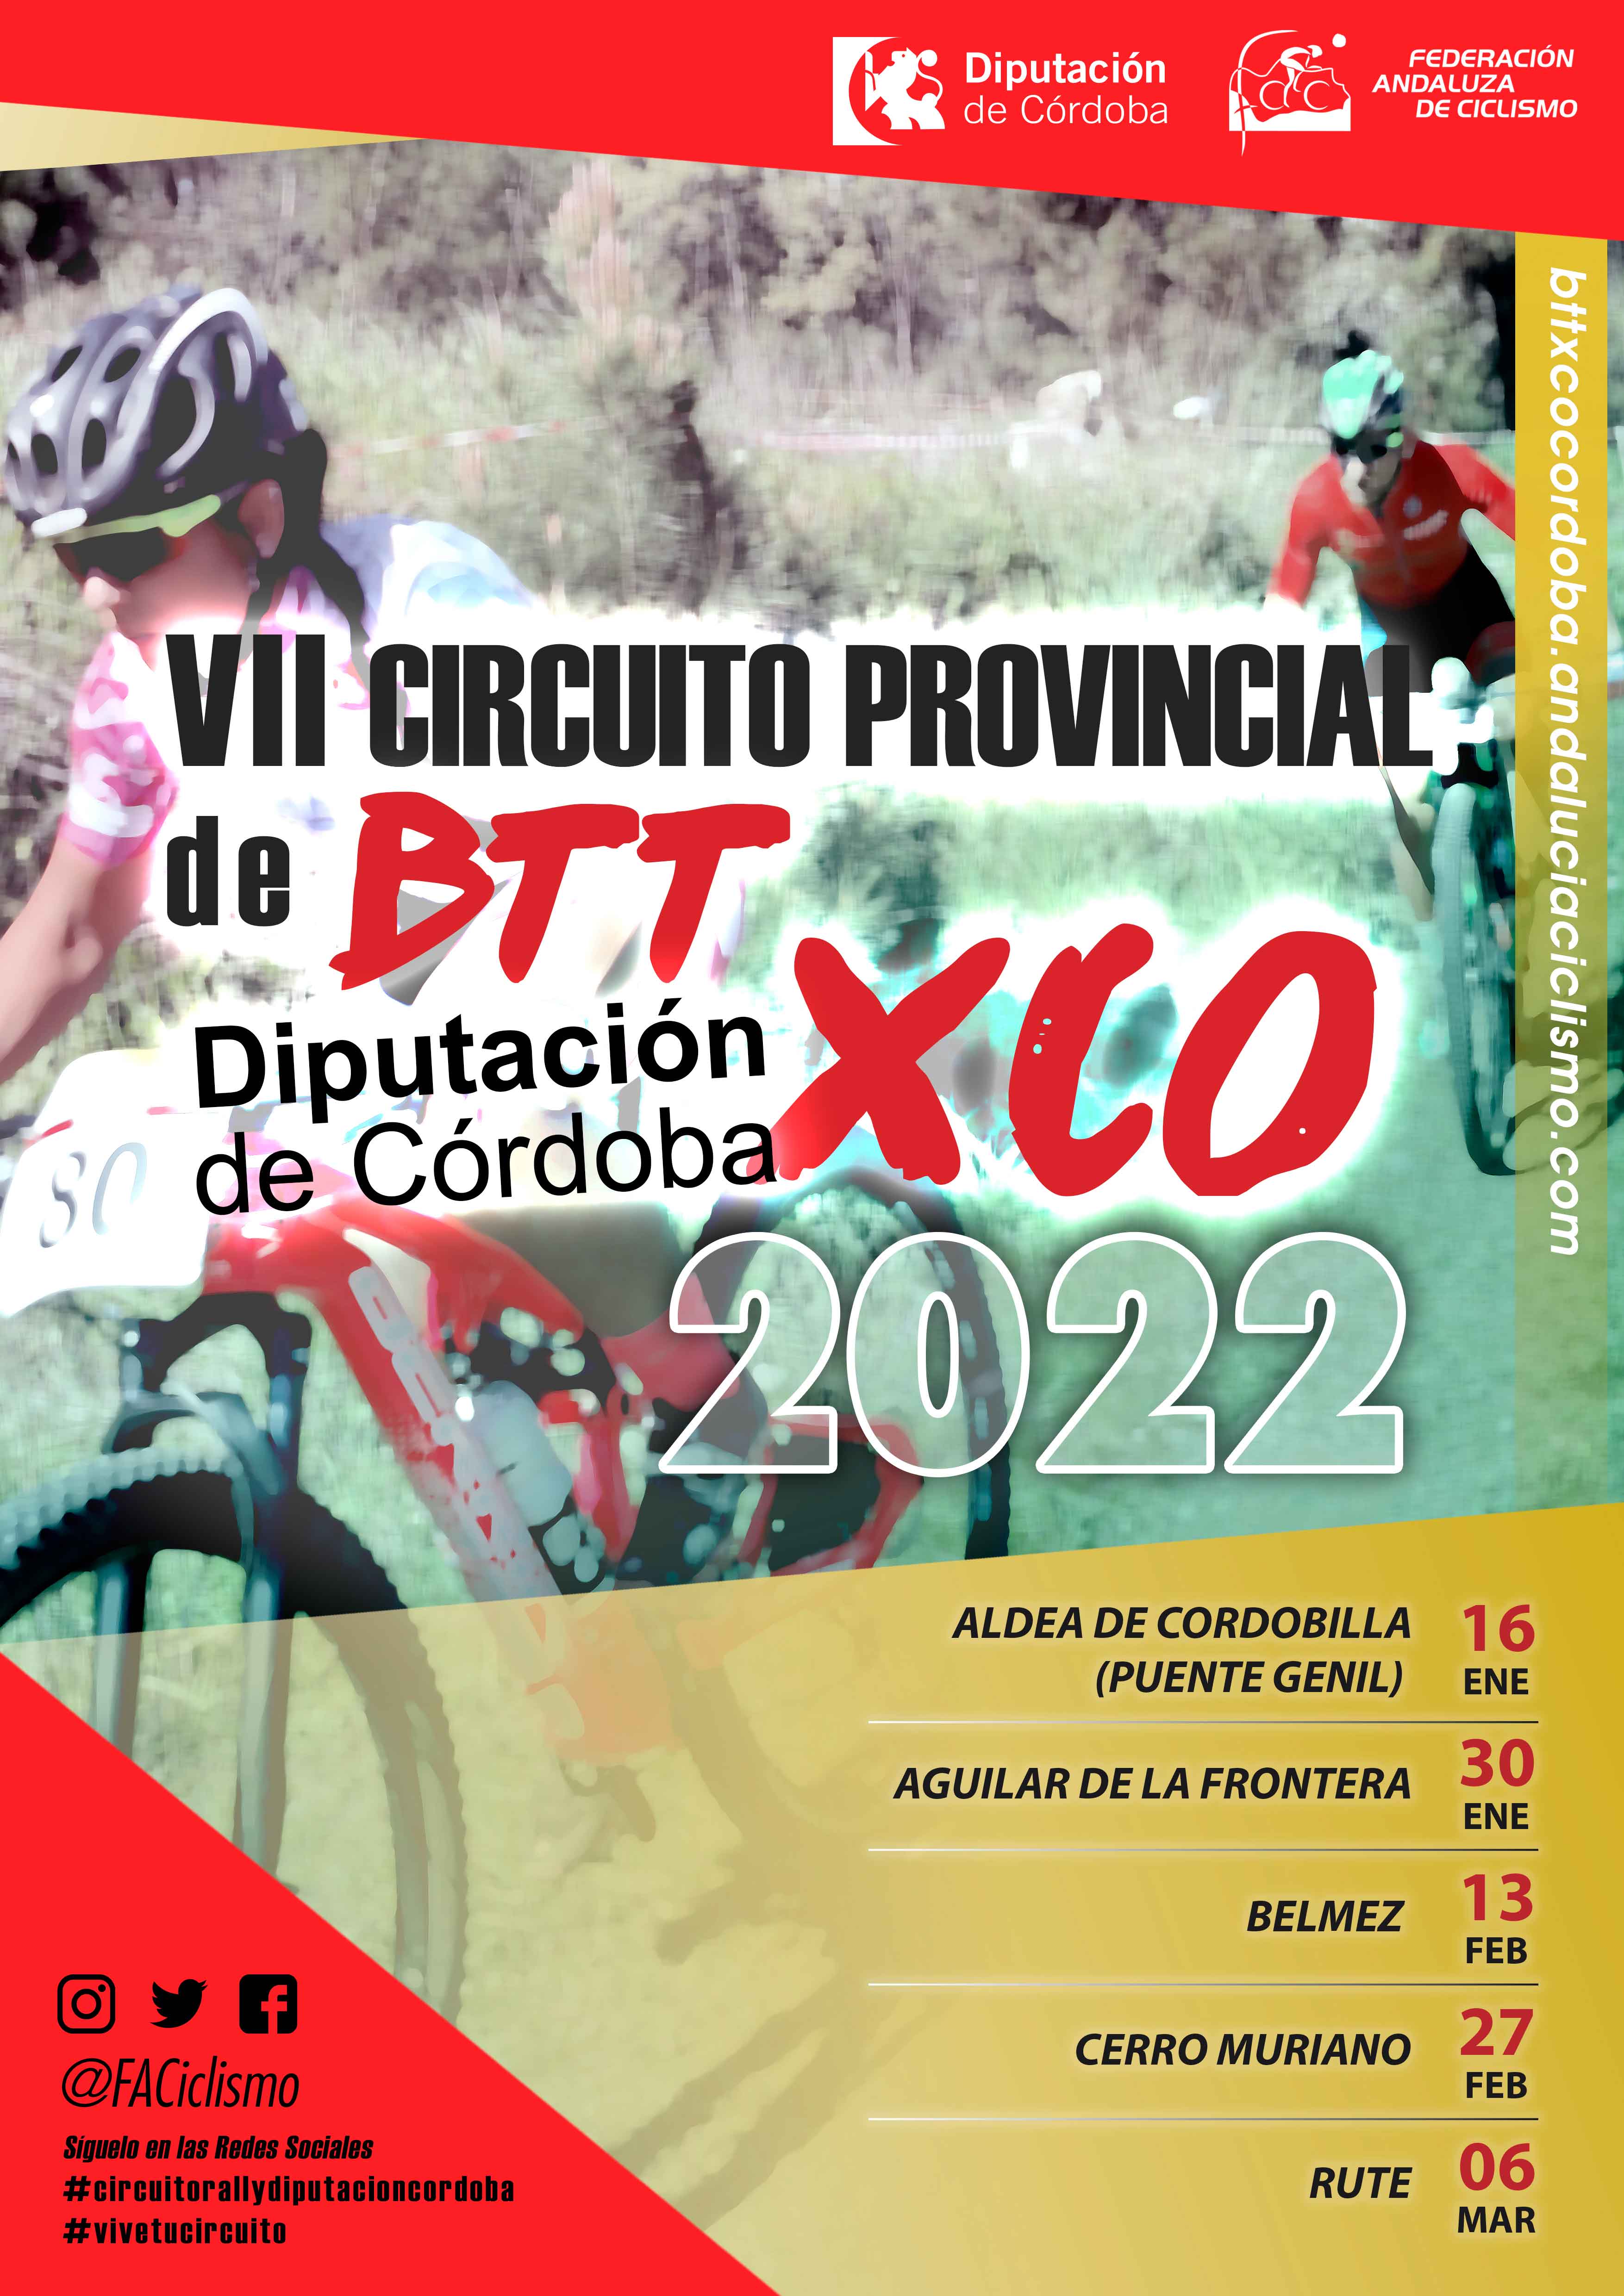 Presentamos el VII Circuito Provincial Diputación de Córdoba BTT XCO 2022